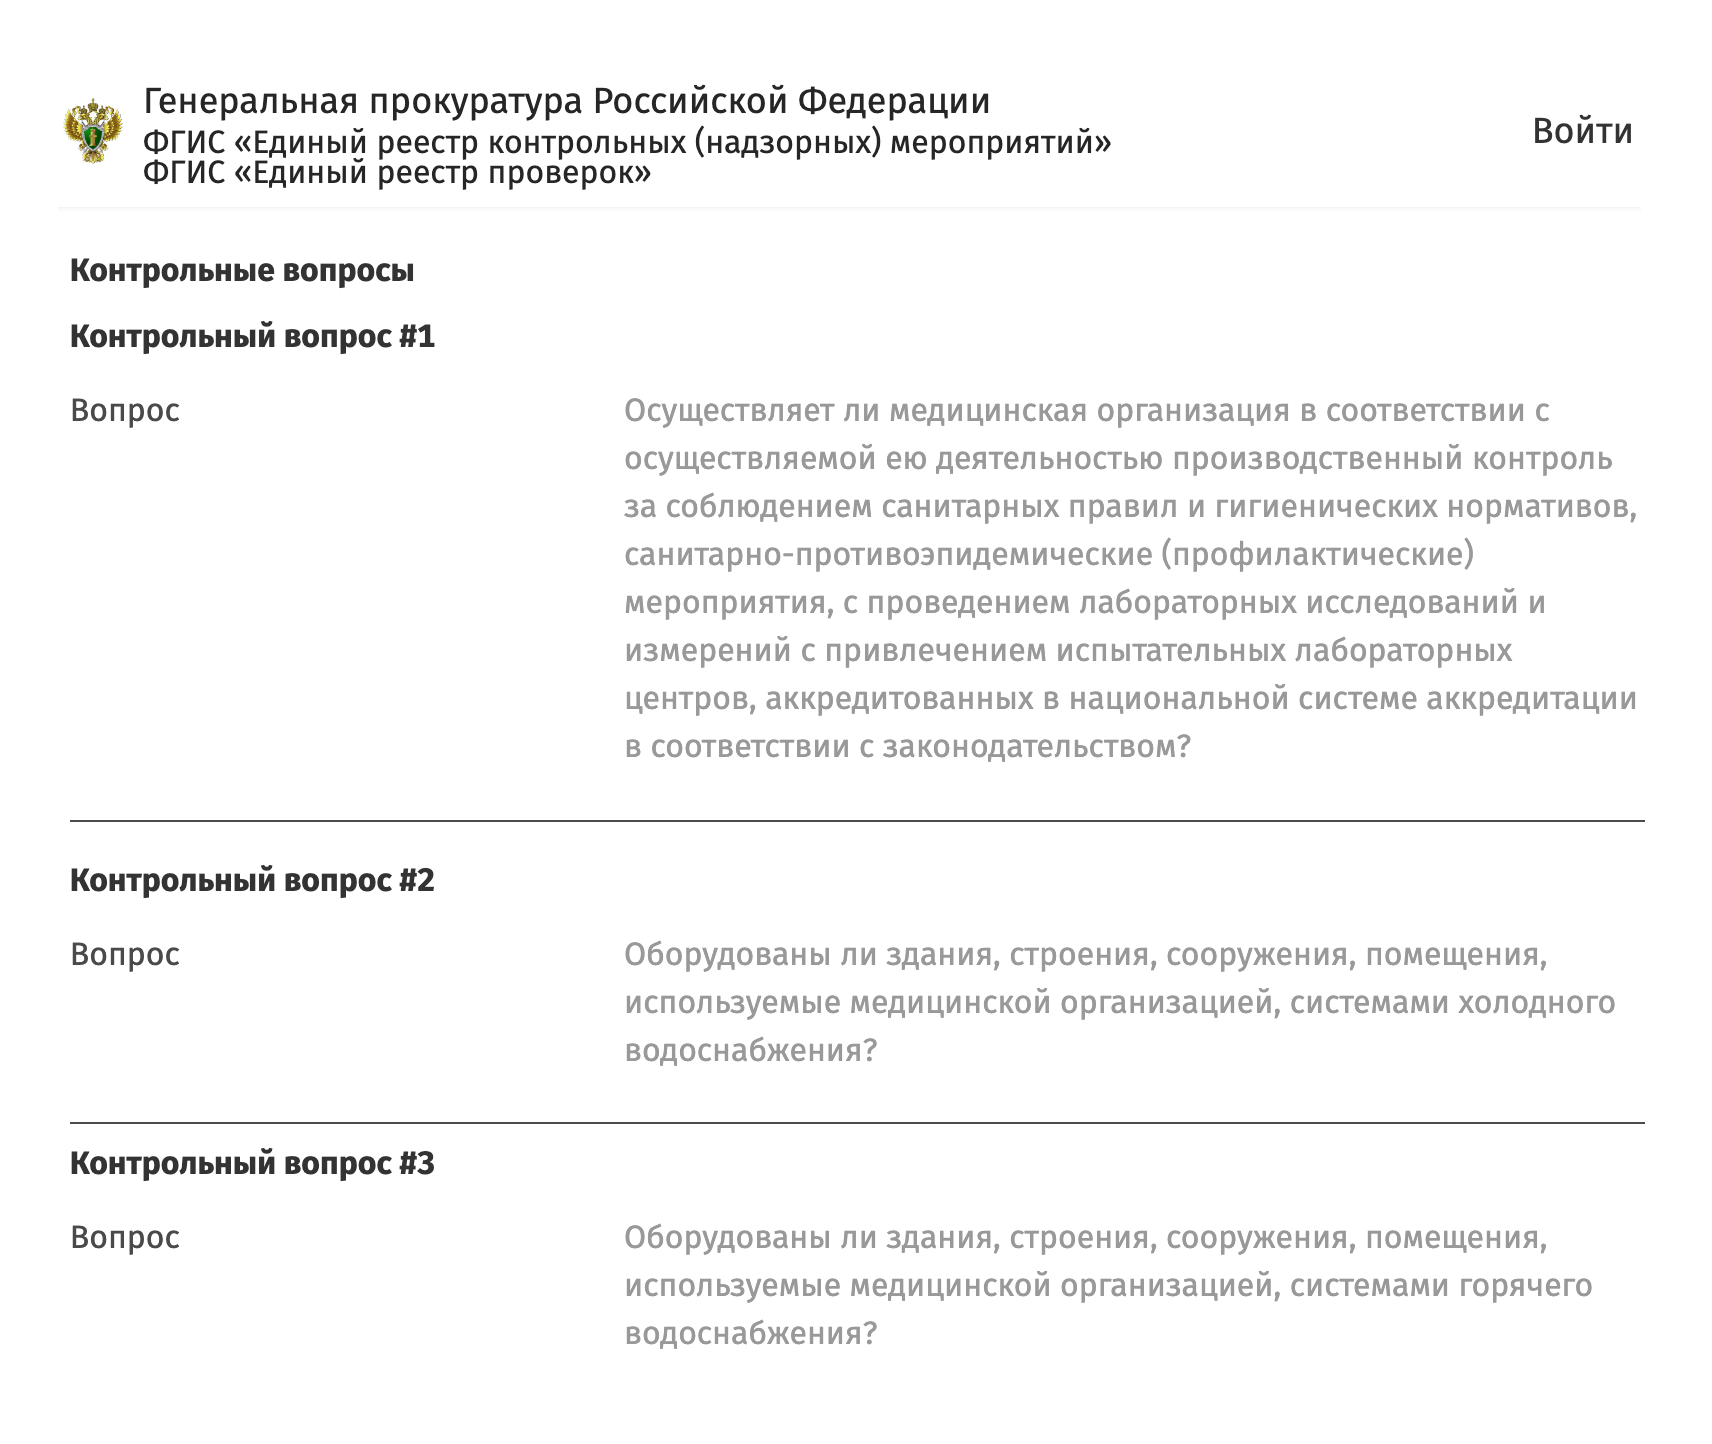 Здесь же можно узнать список контрольных вопросов, на которых заострит внимание Роспотребнадзор во время проверки. Источник: proverki.gov.ru